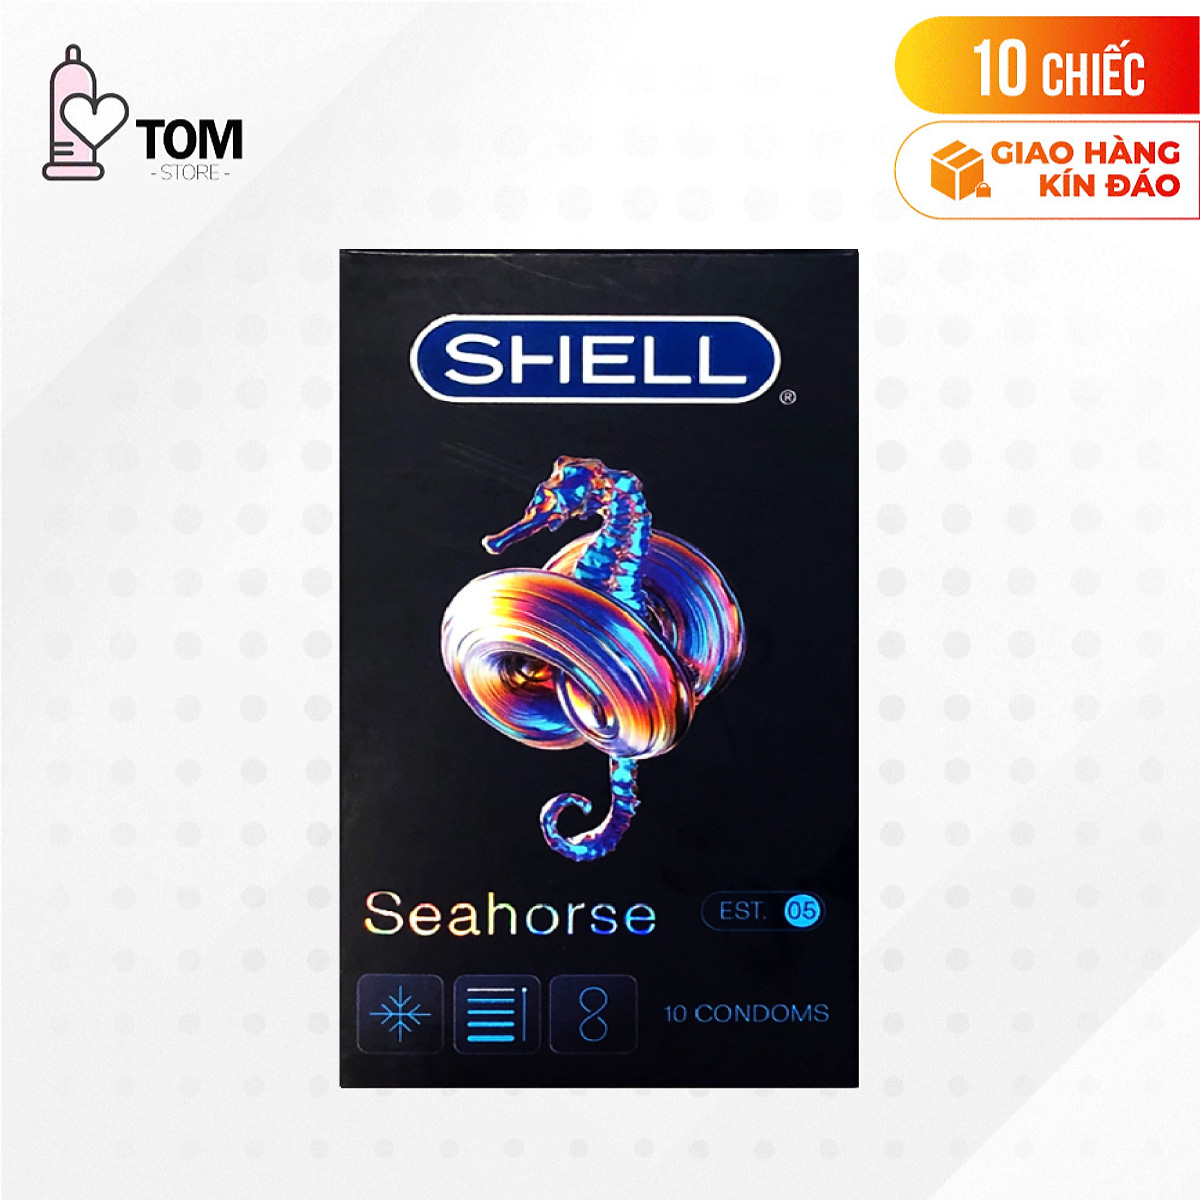 Hình ảnh Bao cao su Shell Seahorse - Kéo dài thời gian - Hộp 10 cái